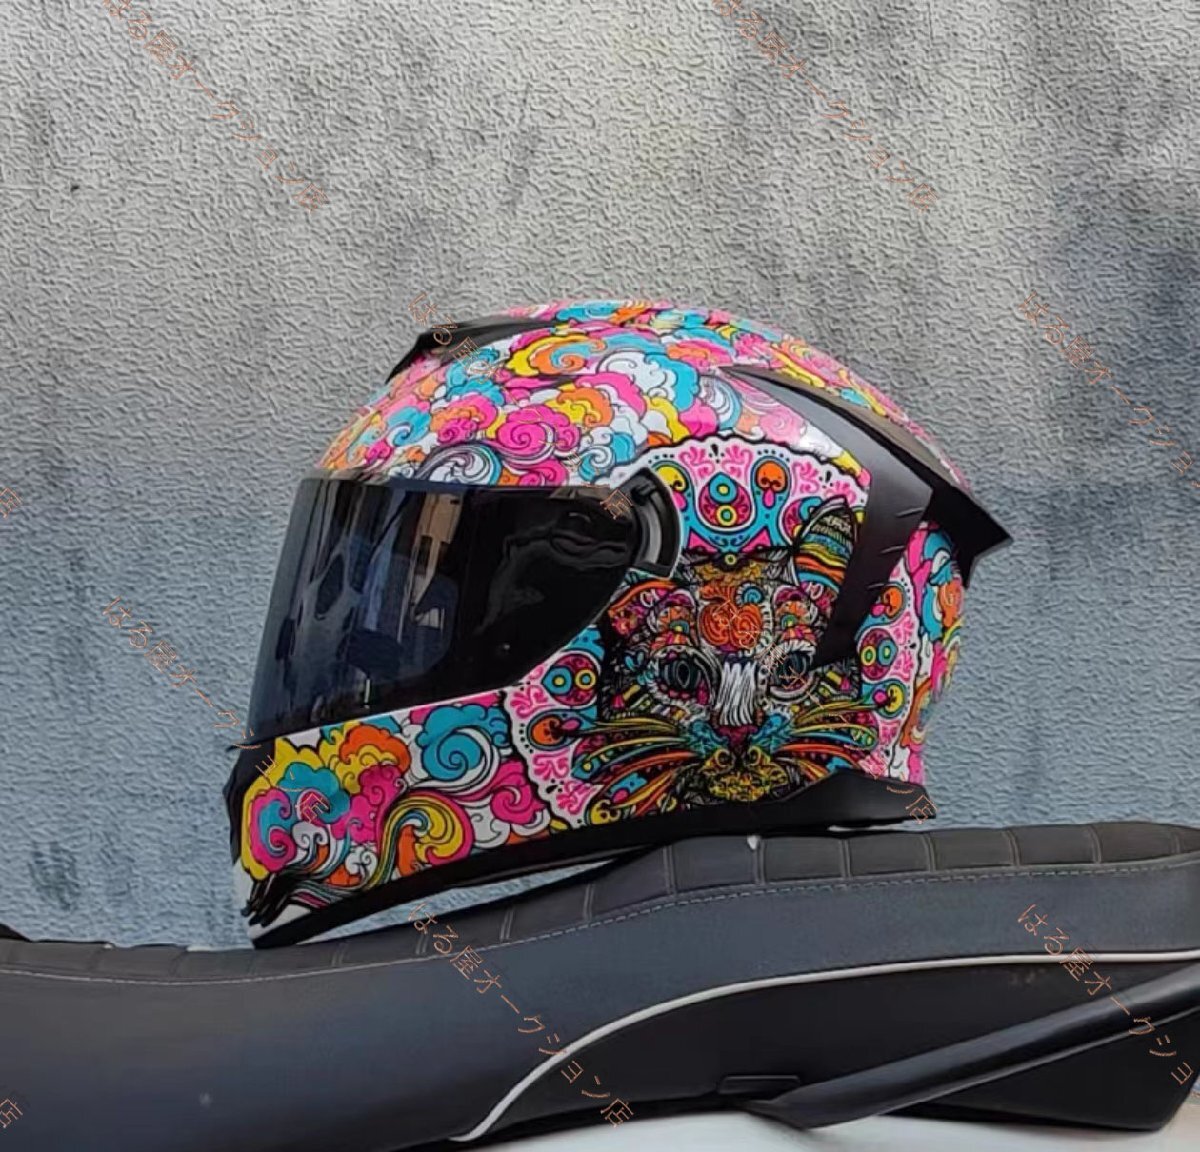  мотоцикл встроенный солнцезащитные очки onroad шлем full-face шлем S~XL размер выбор возможно внутренний bai жа цай z:L